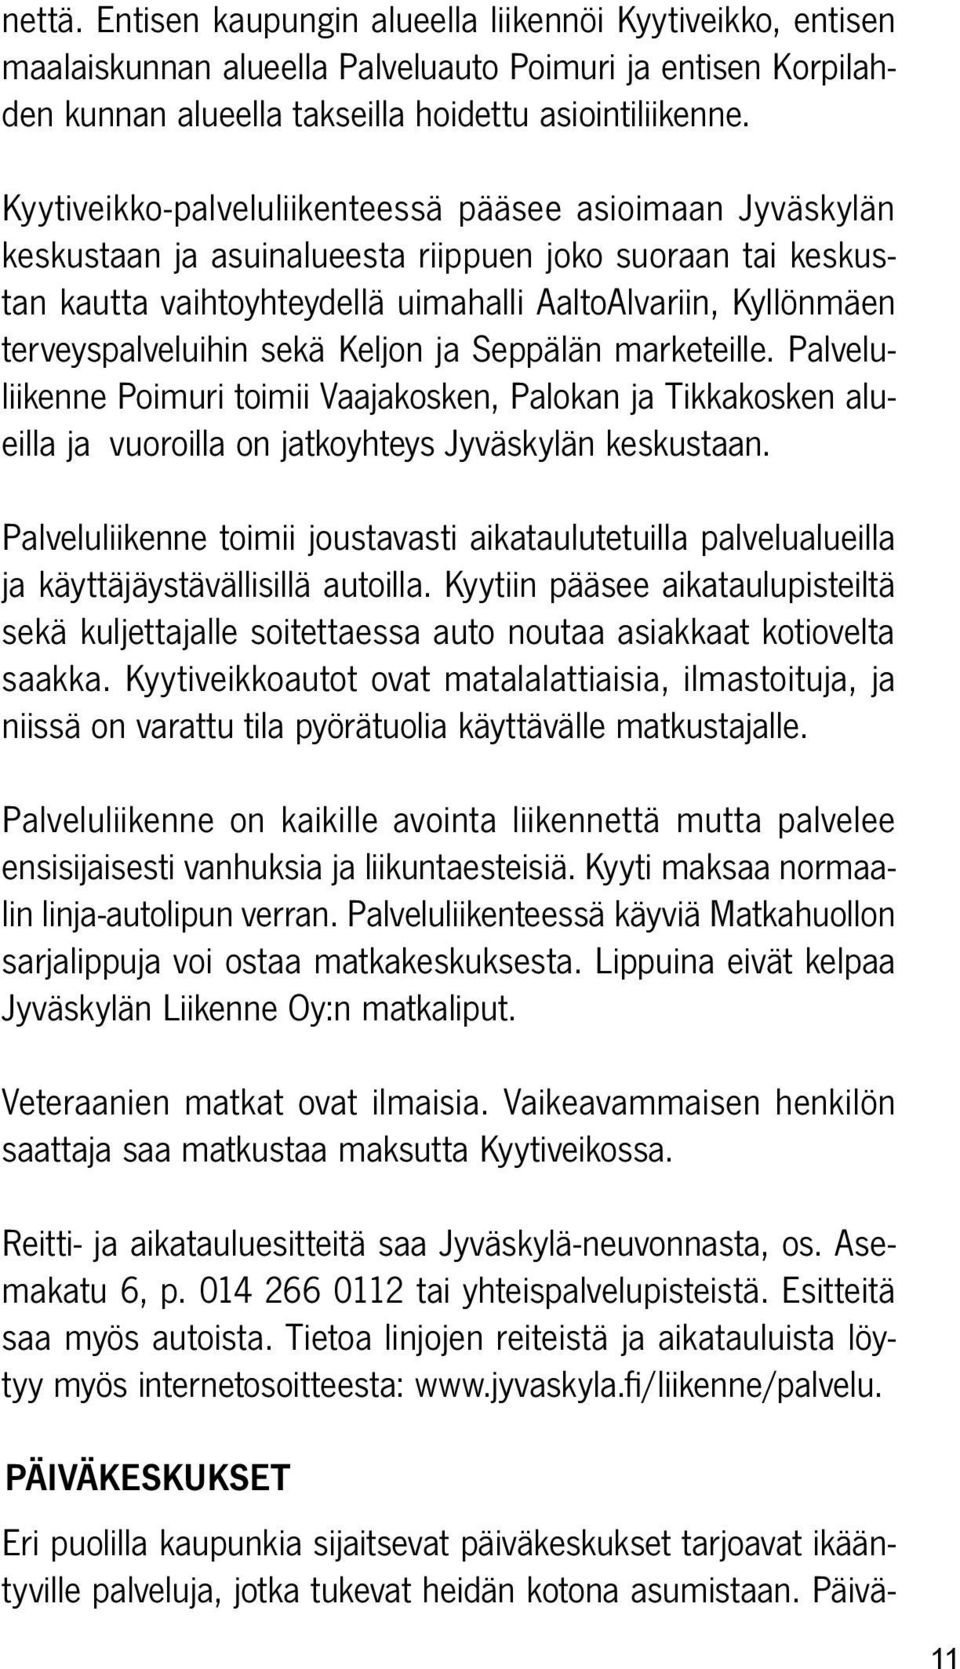 terveyspalveluihin sekä Keljon ja Seppälän marketeille. Palveluliikenne Poimuri toimii Vaajakosken, Palokan ja Tikkakosken alueilla ja vuoroilla on jatkoyhteys Jyväskylän keskustaan.